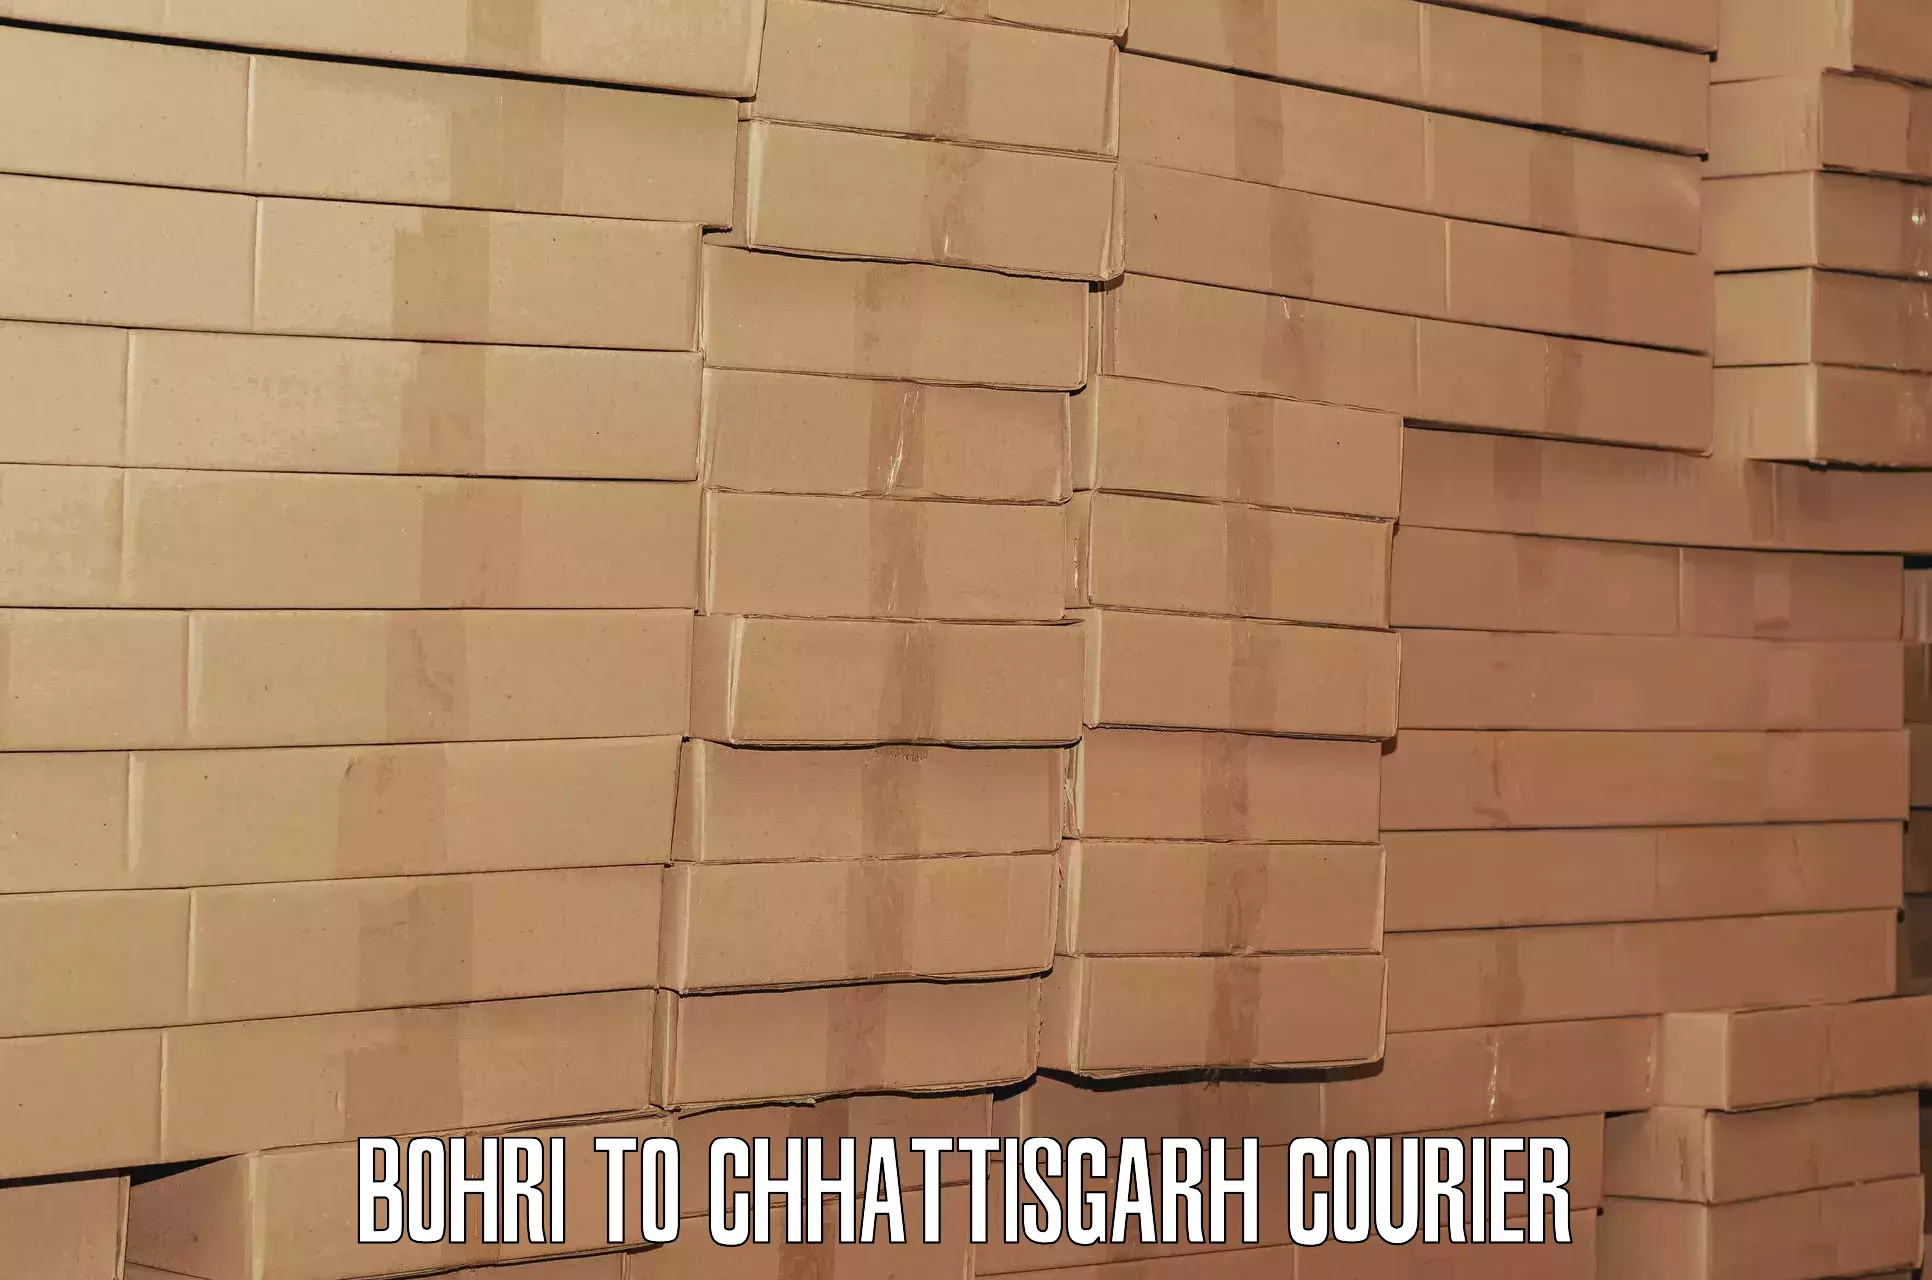 Luggage delivery estimate Bohri to Korea Chhattisgarh